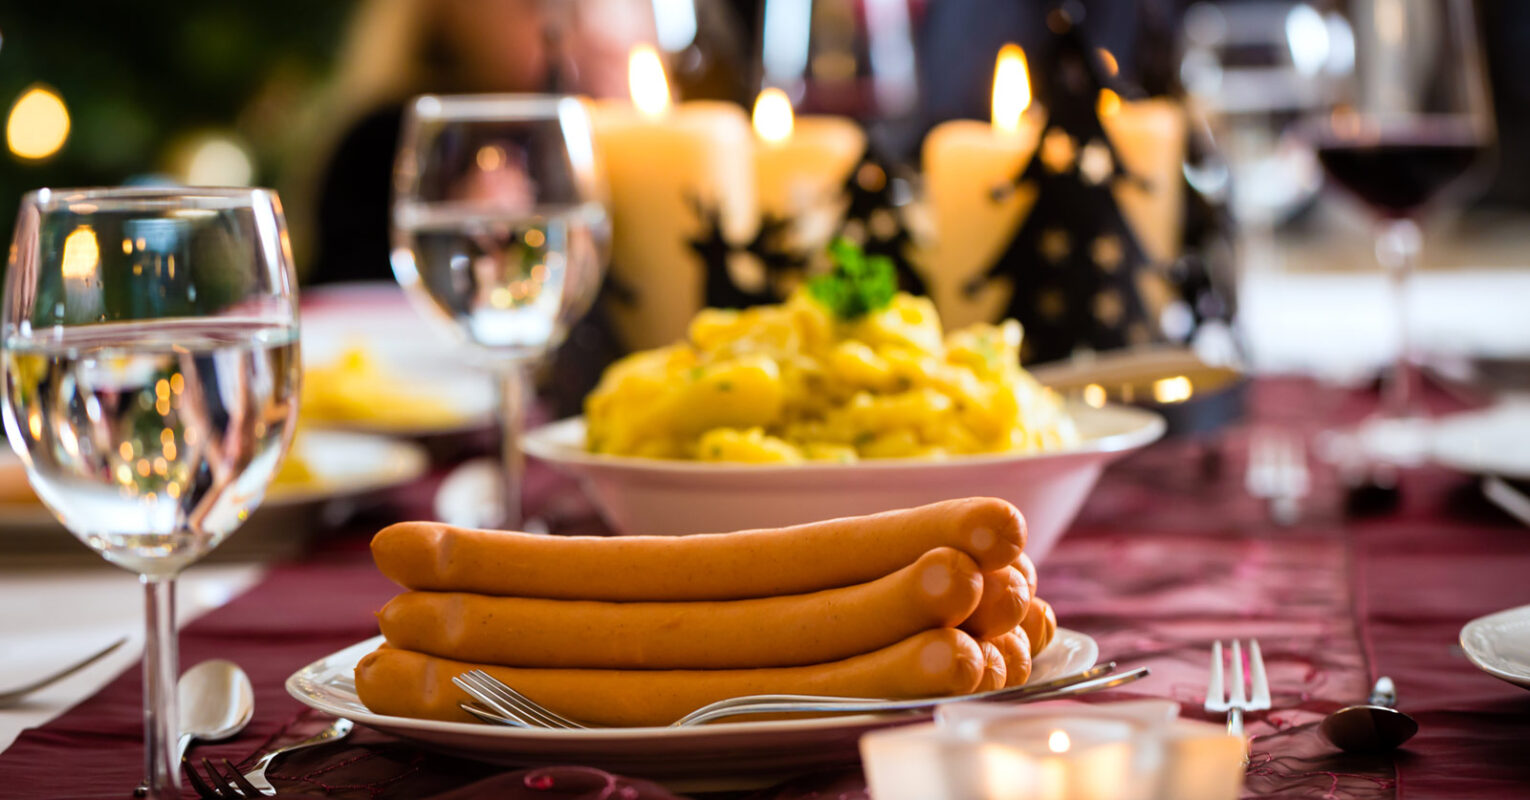 Festmenü: An Heiligabend gibt es Kartoffelsalat mit Würstchen